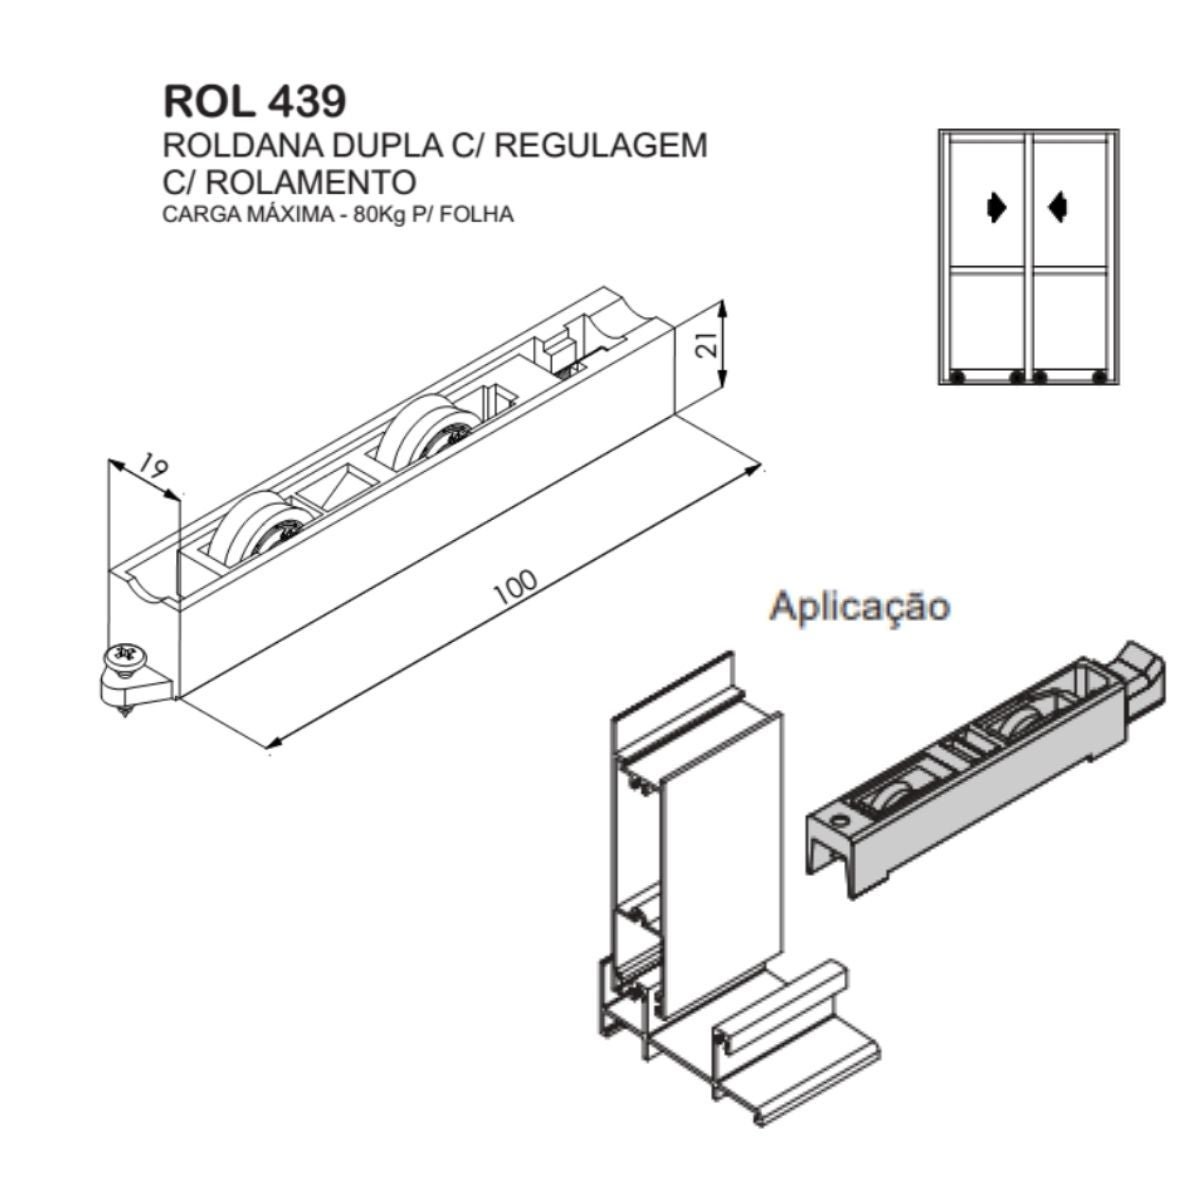 ROL 439 - Roldana dupla com regulagem para janela e porta de correr de alumínio Suprema - 6